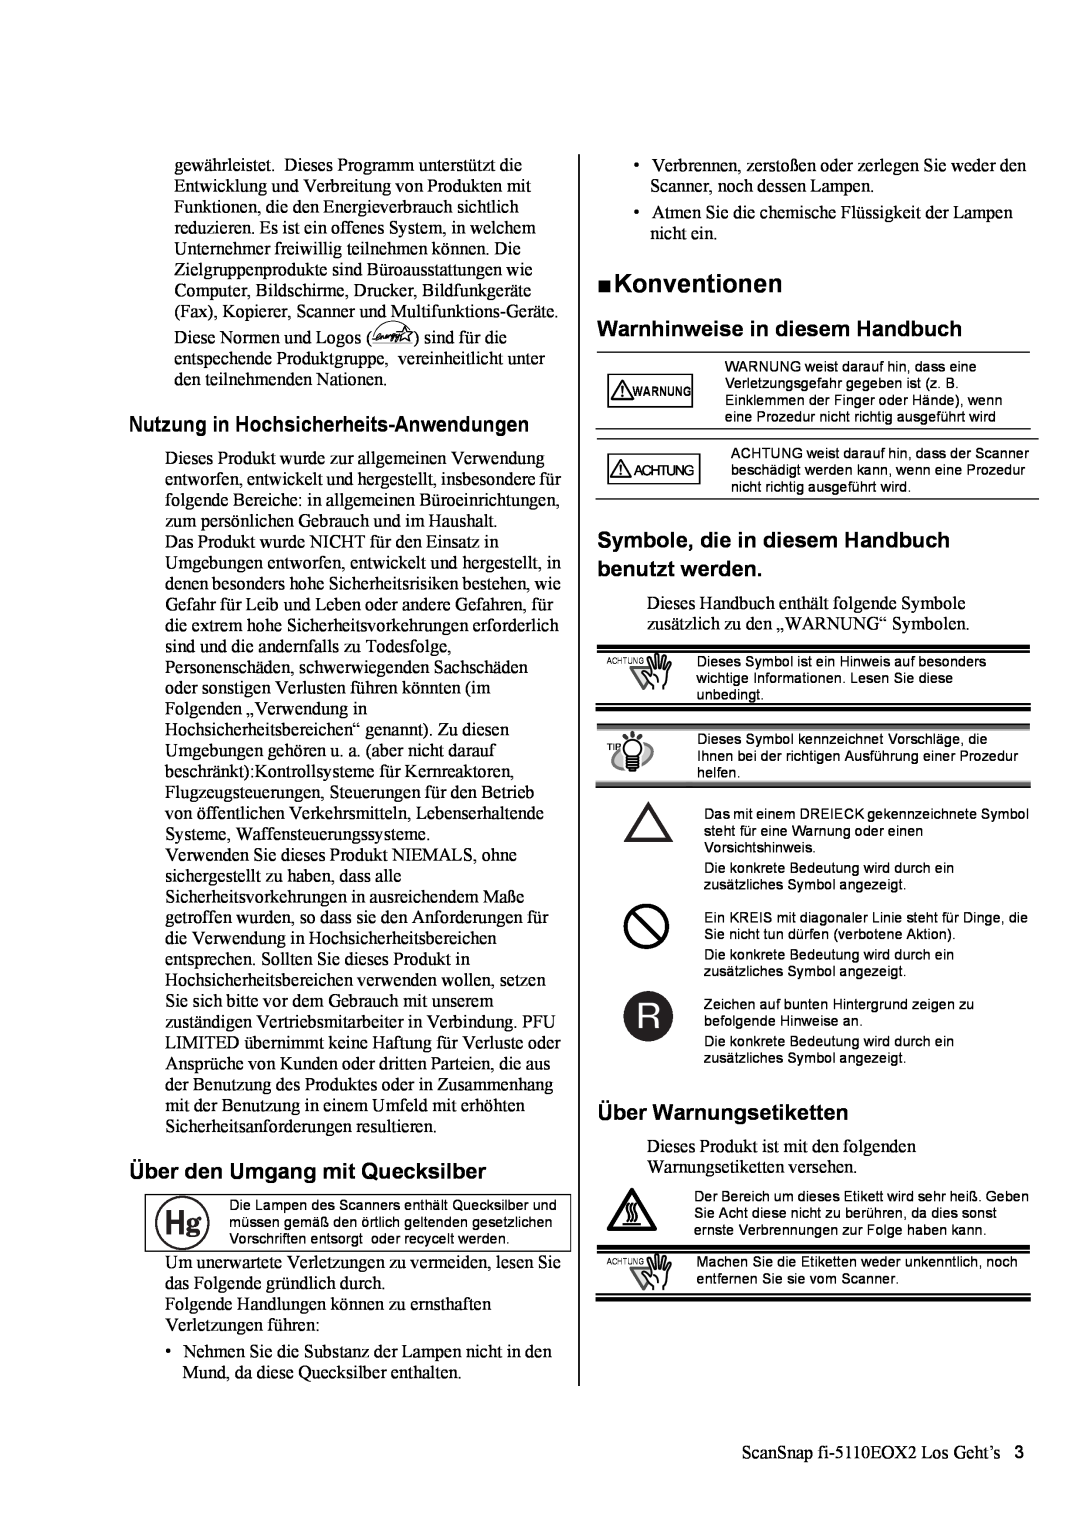 Fujitsu fi-5110EOX2 manual „ Konventionen, Nutzung in Hochsicherheits-Anwendungen, Über den Umgang mit Quecksilber 